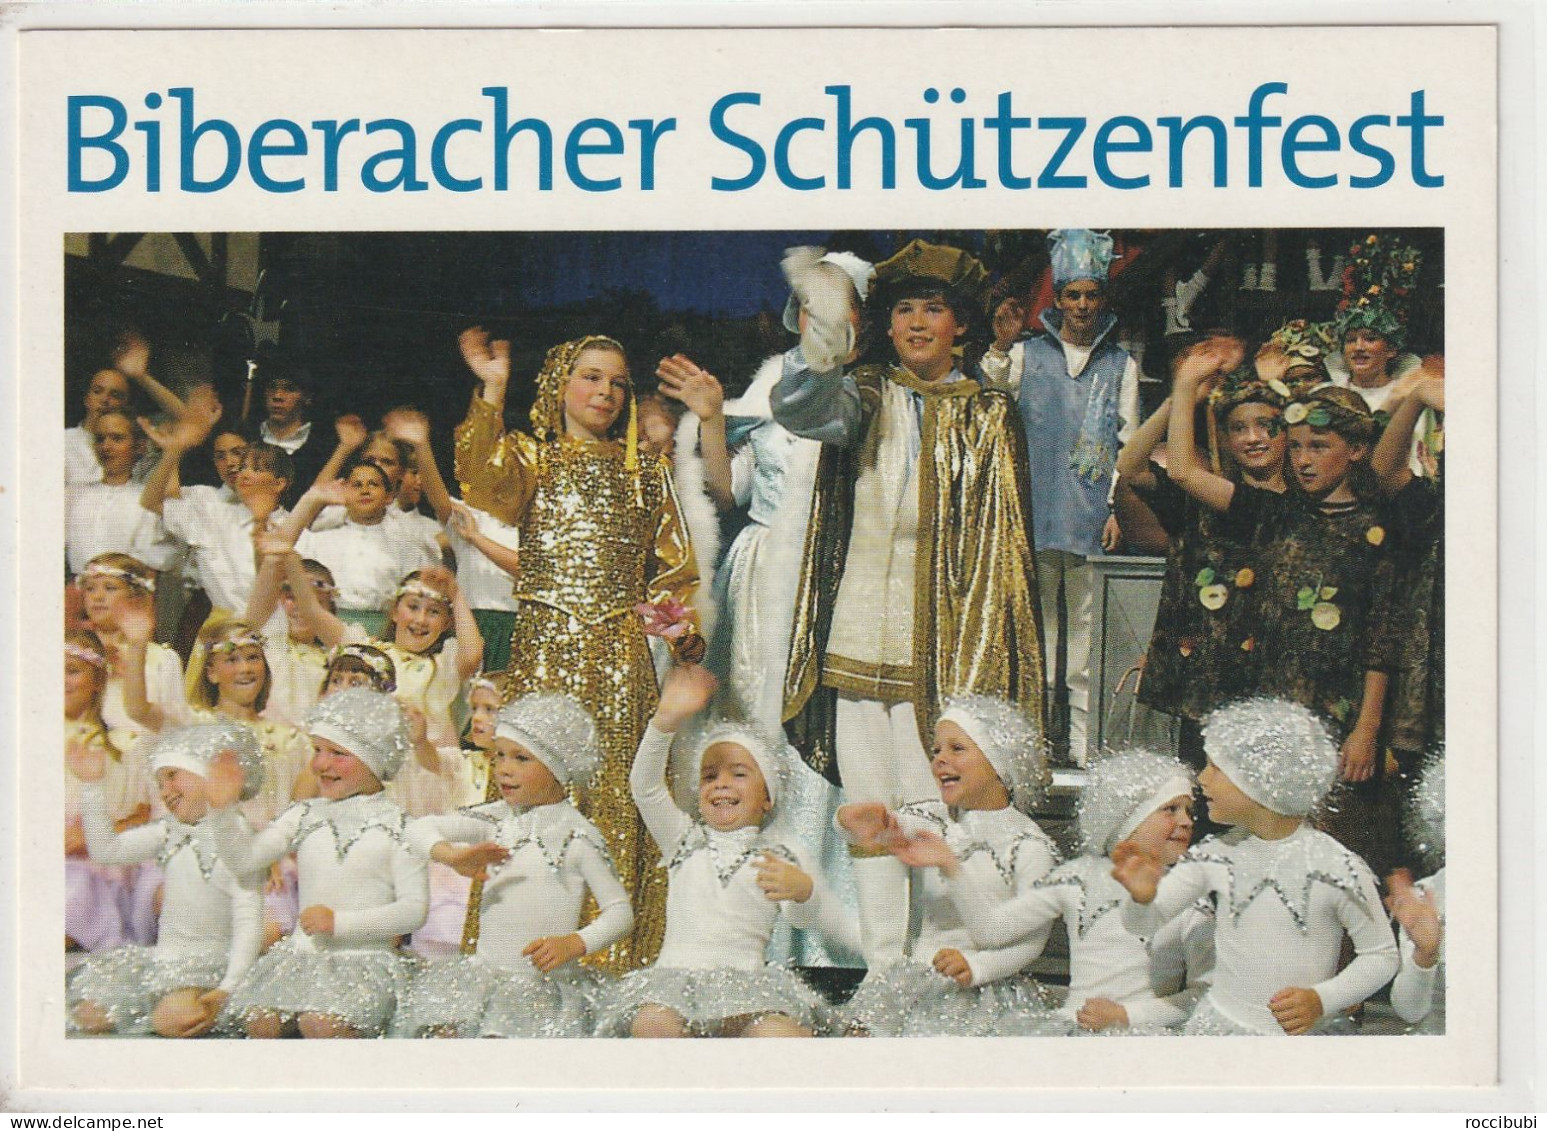 Biberach, Schützenfest, Baden-Württemberg - Biberach